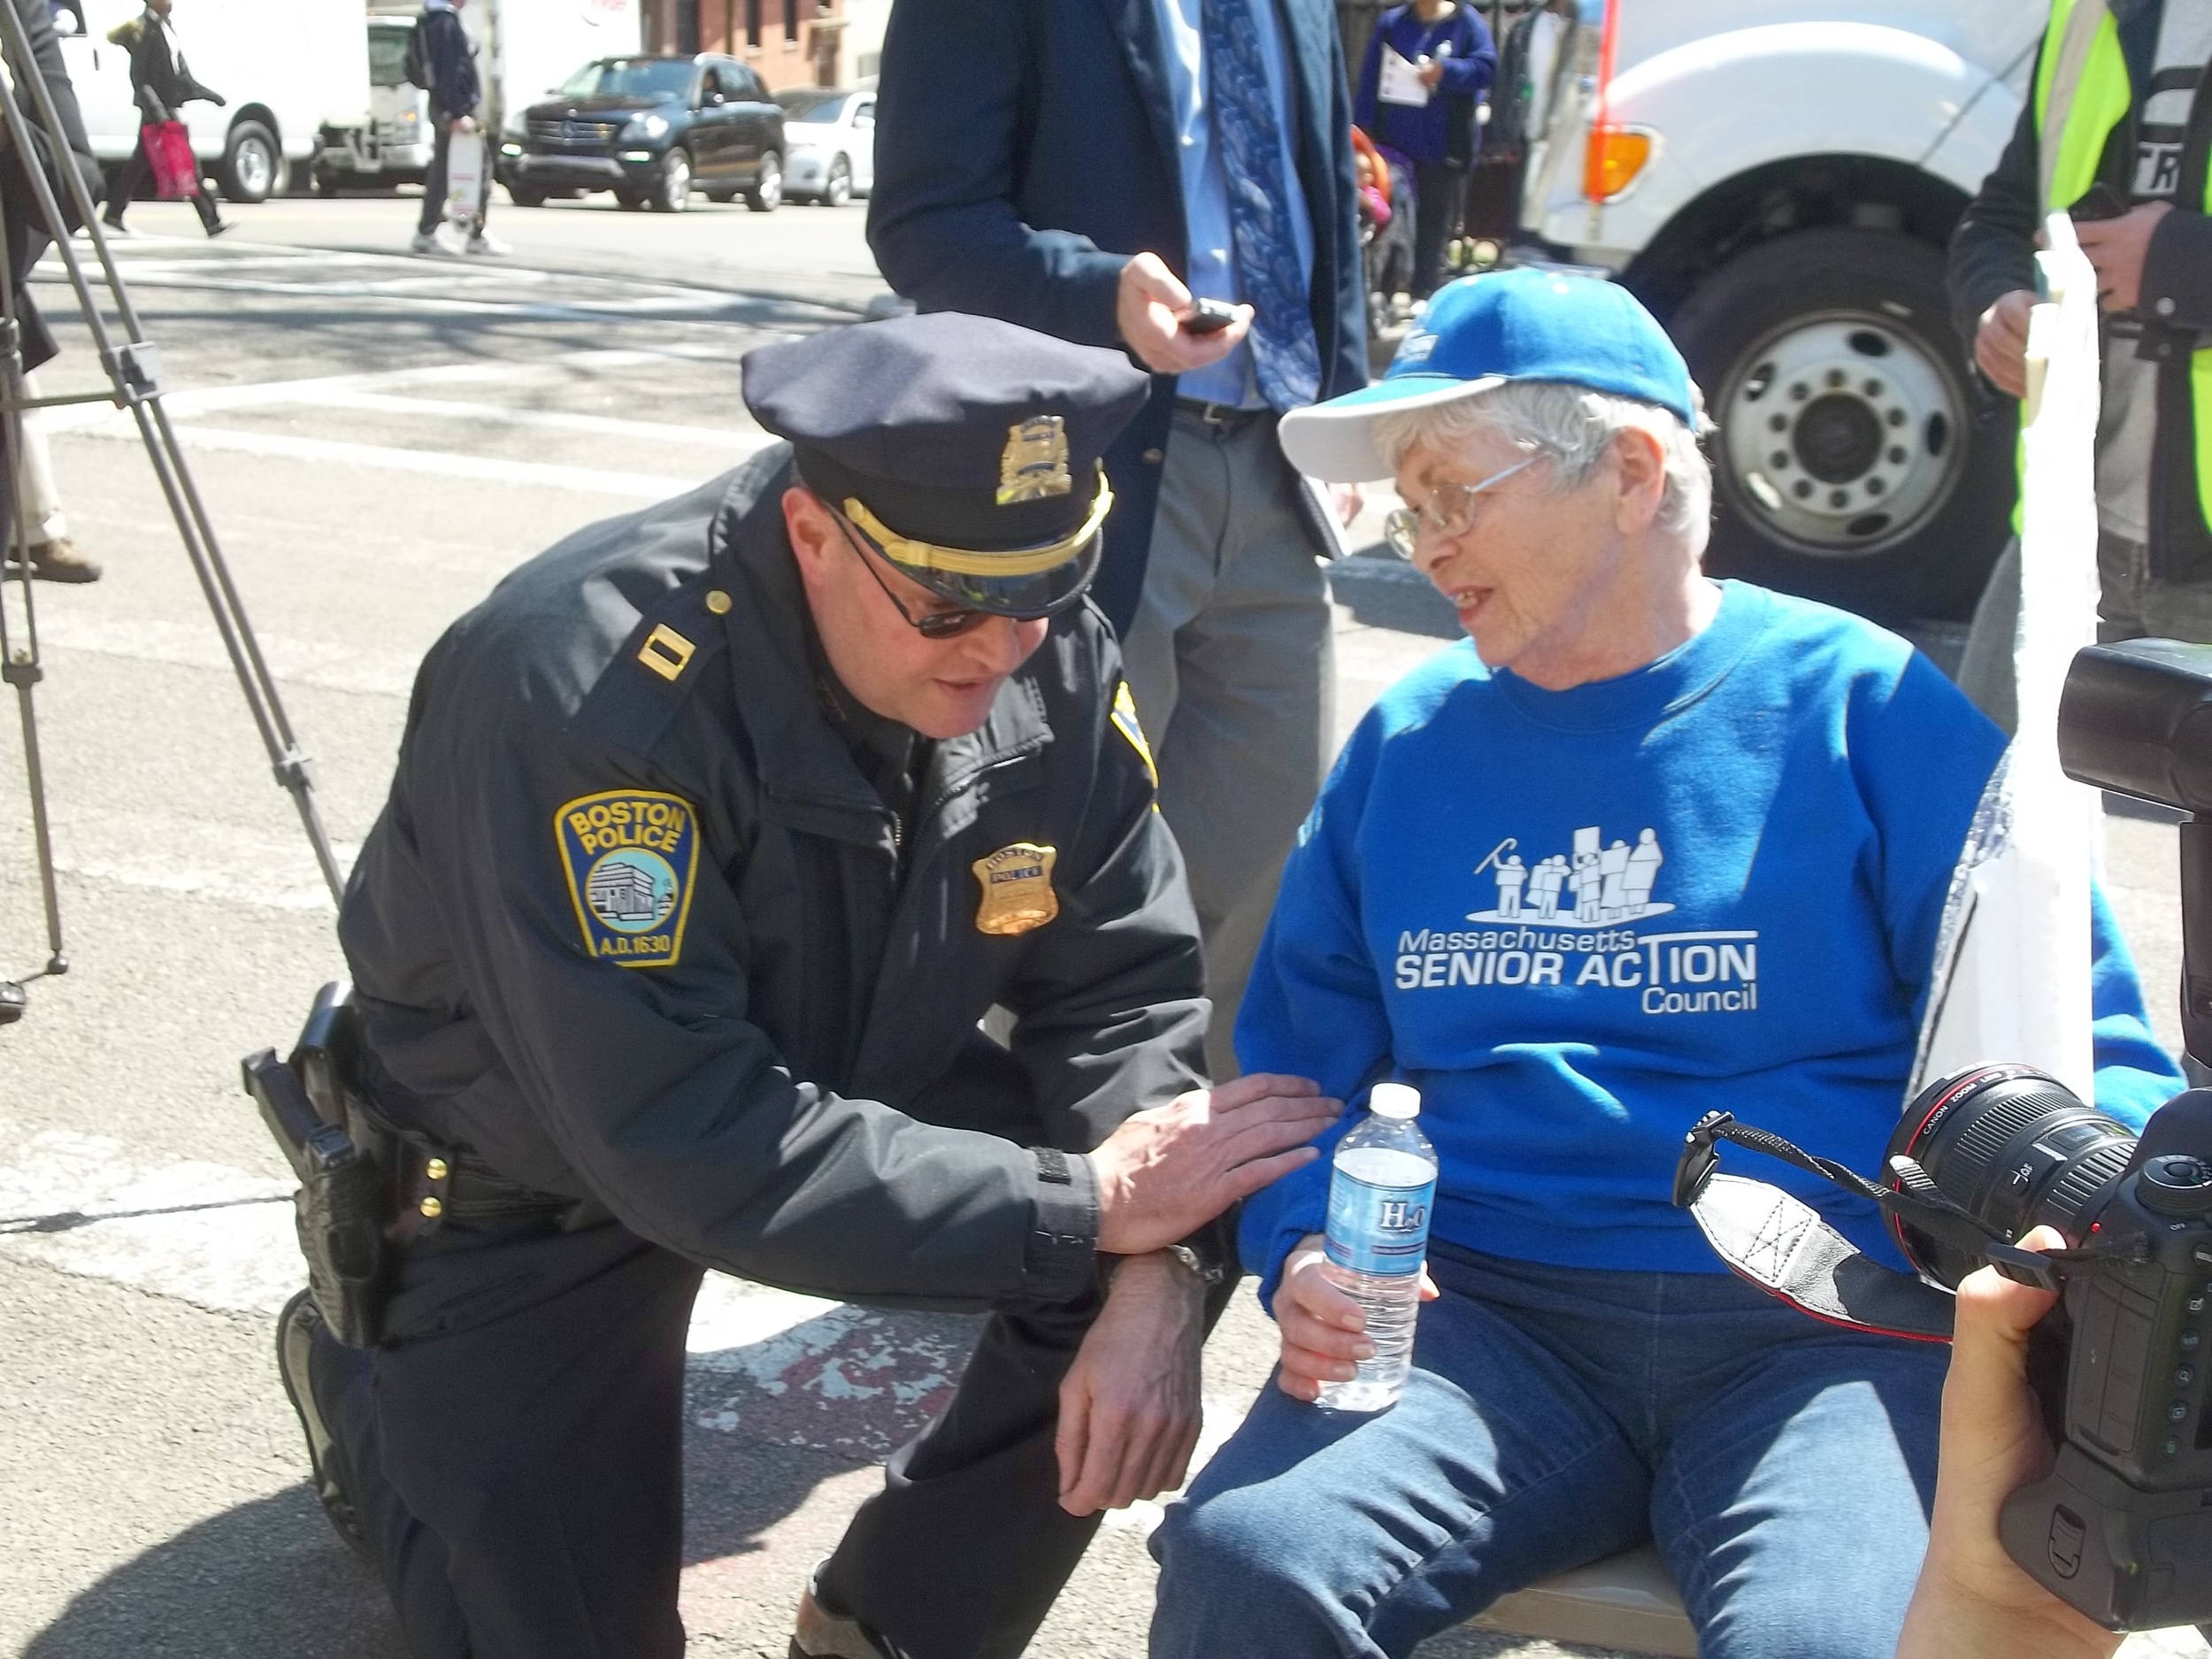 Boston police talking to senior